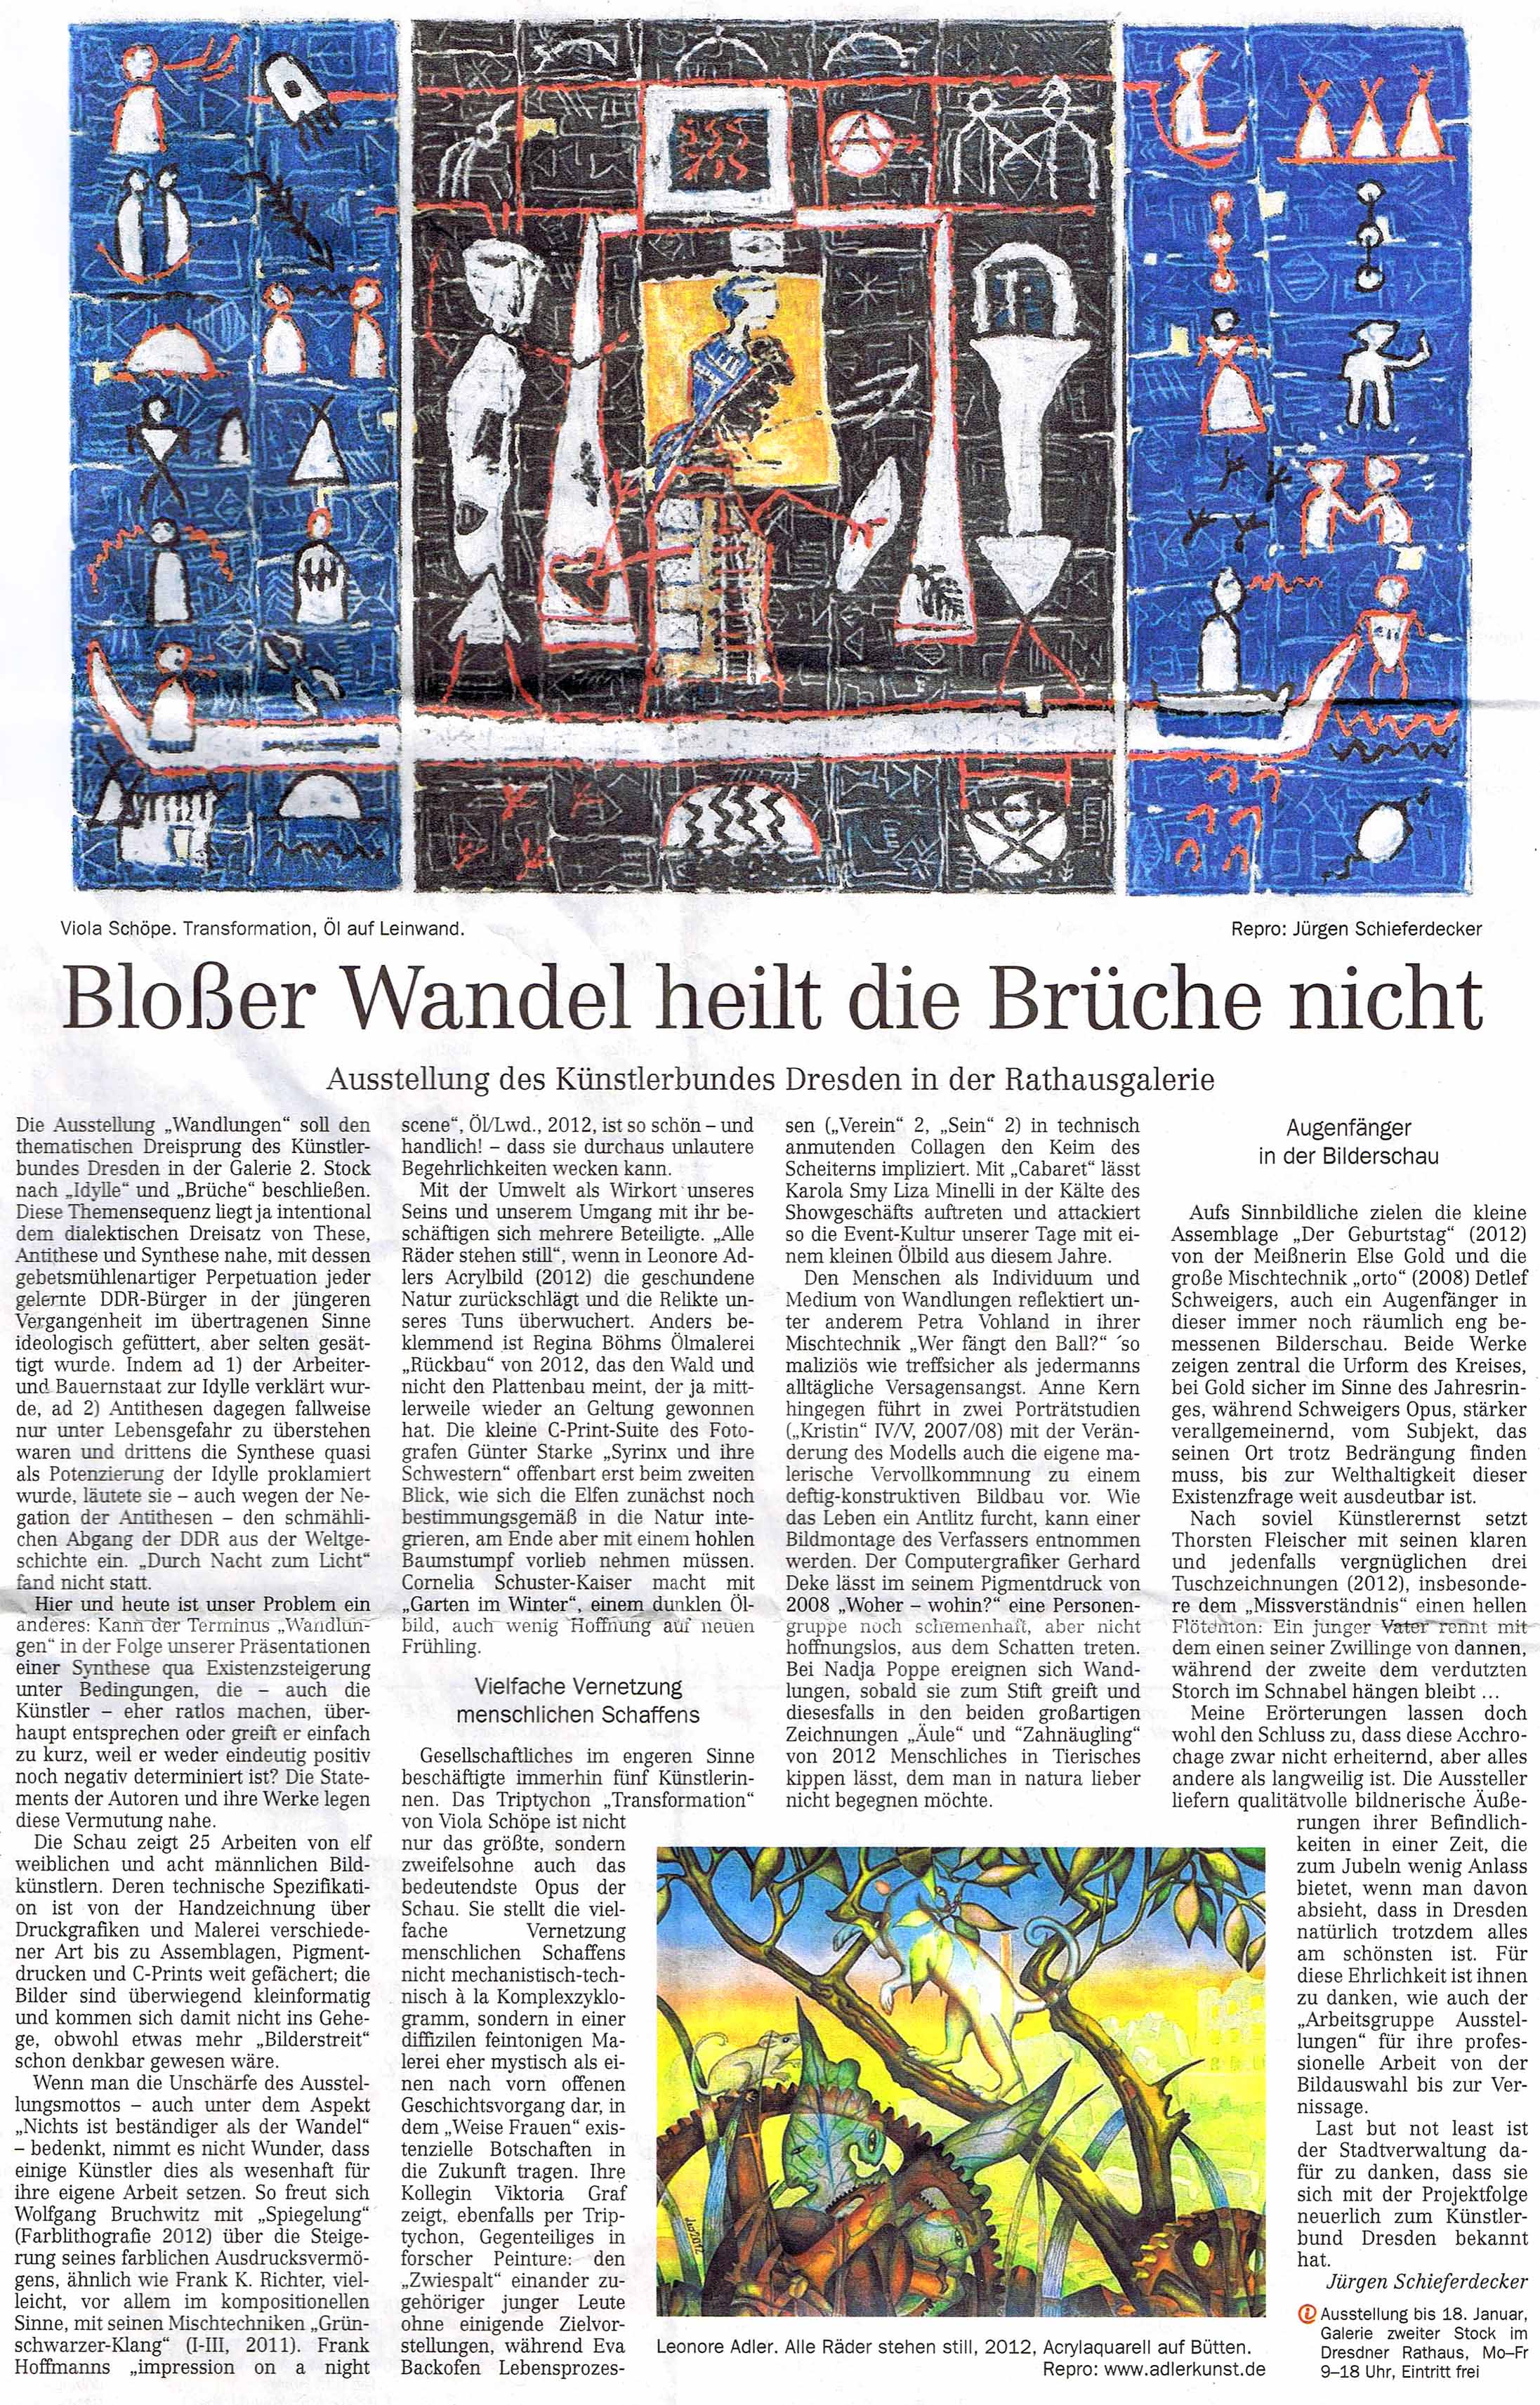 Dresdner Neueste Nachrichten 03.01.2013, Jürgen Schieferdecker